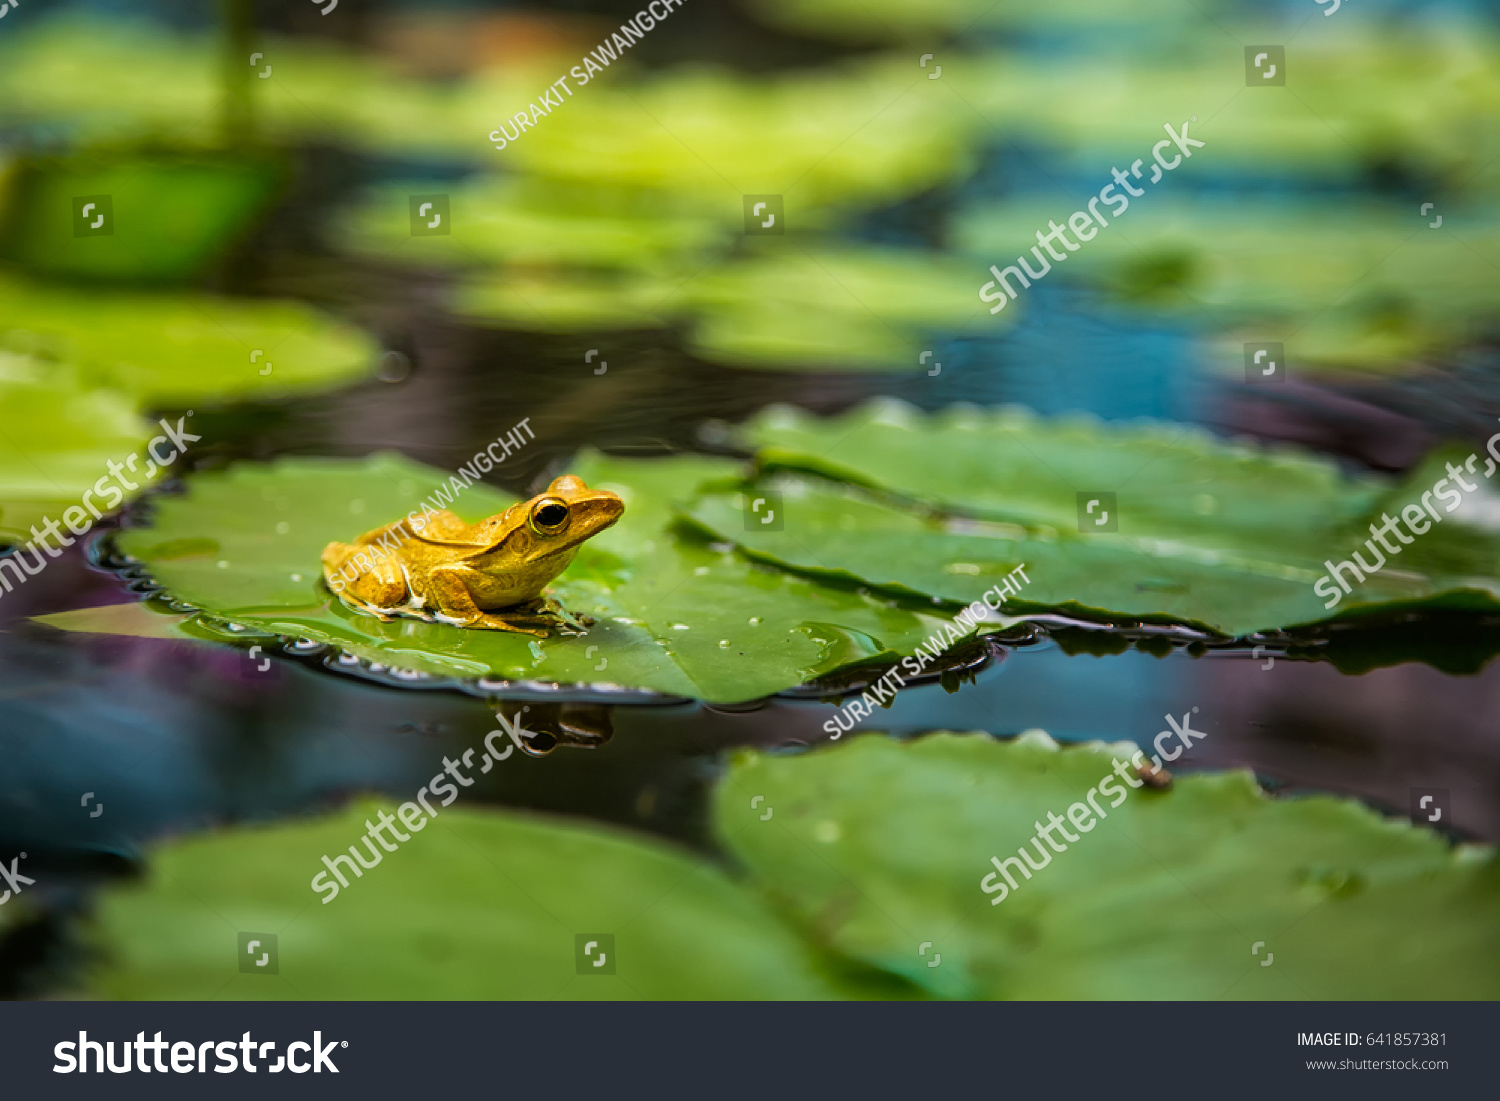 Frog on lotus leaf #641857381